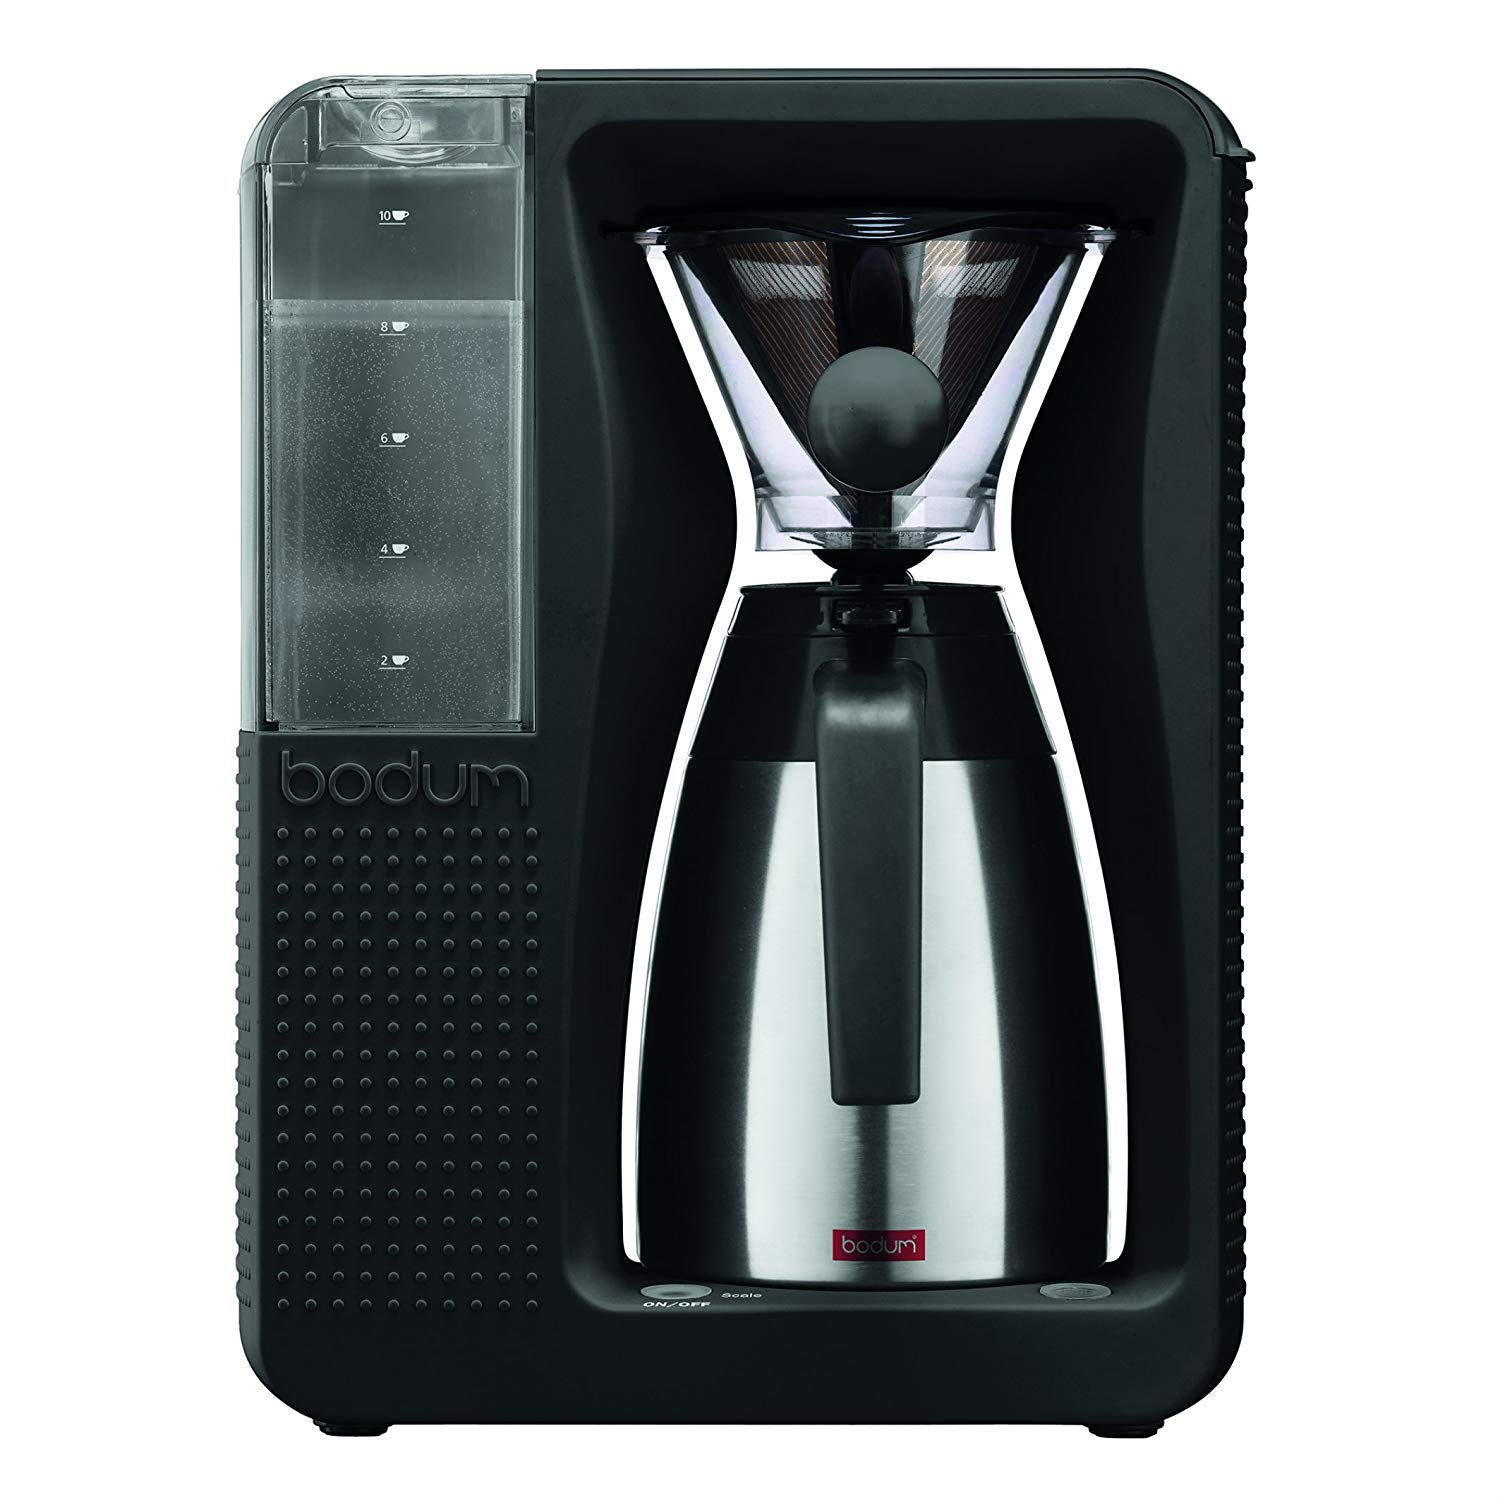 Bodum BISTRO Coffee Maker Automatic Pour Over Coffee Machine